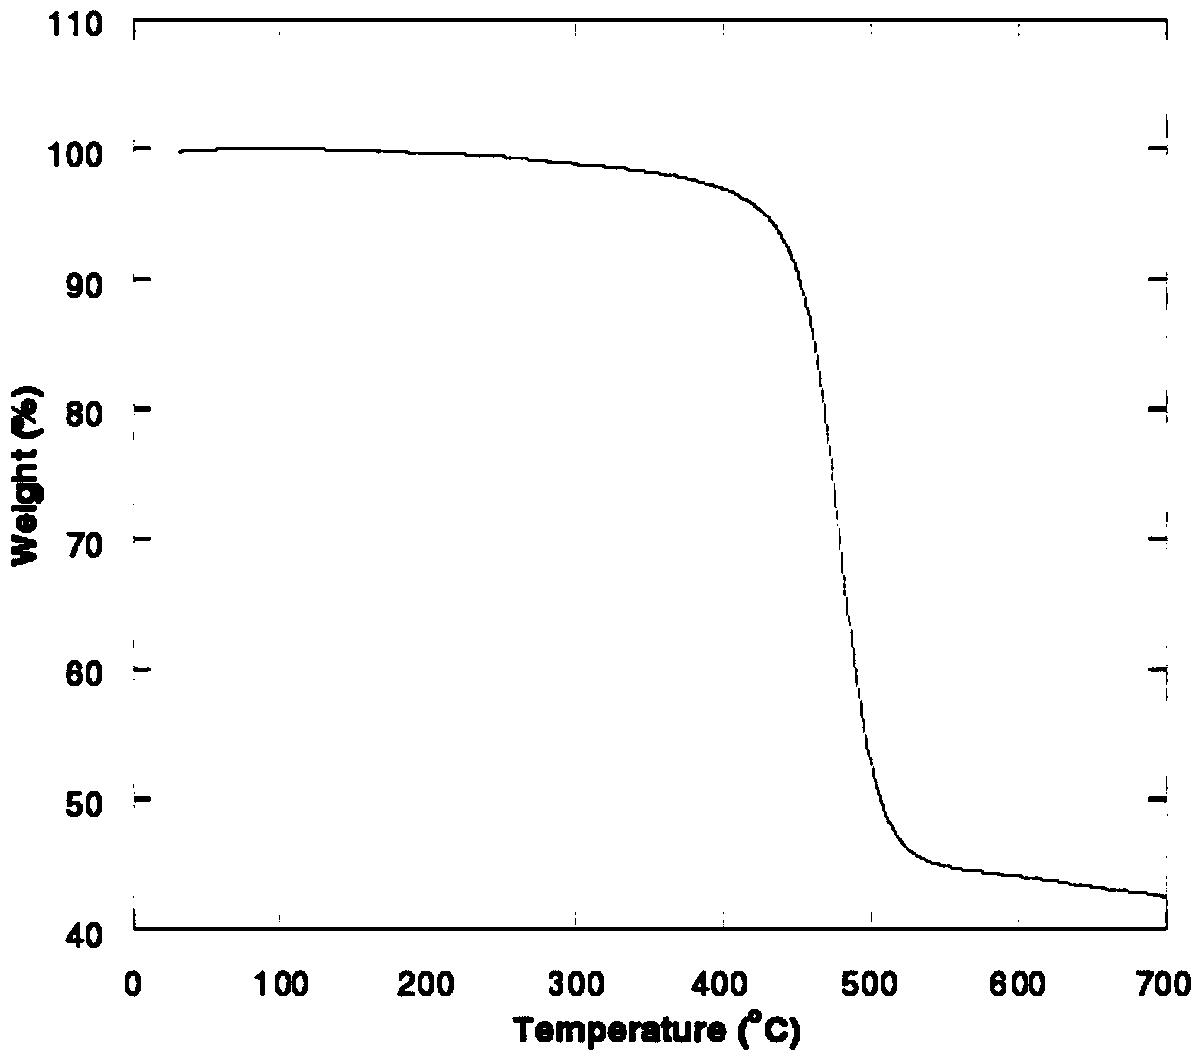 Oxidized thieno-bi-carbazole derivative and applications thereof